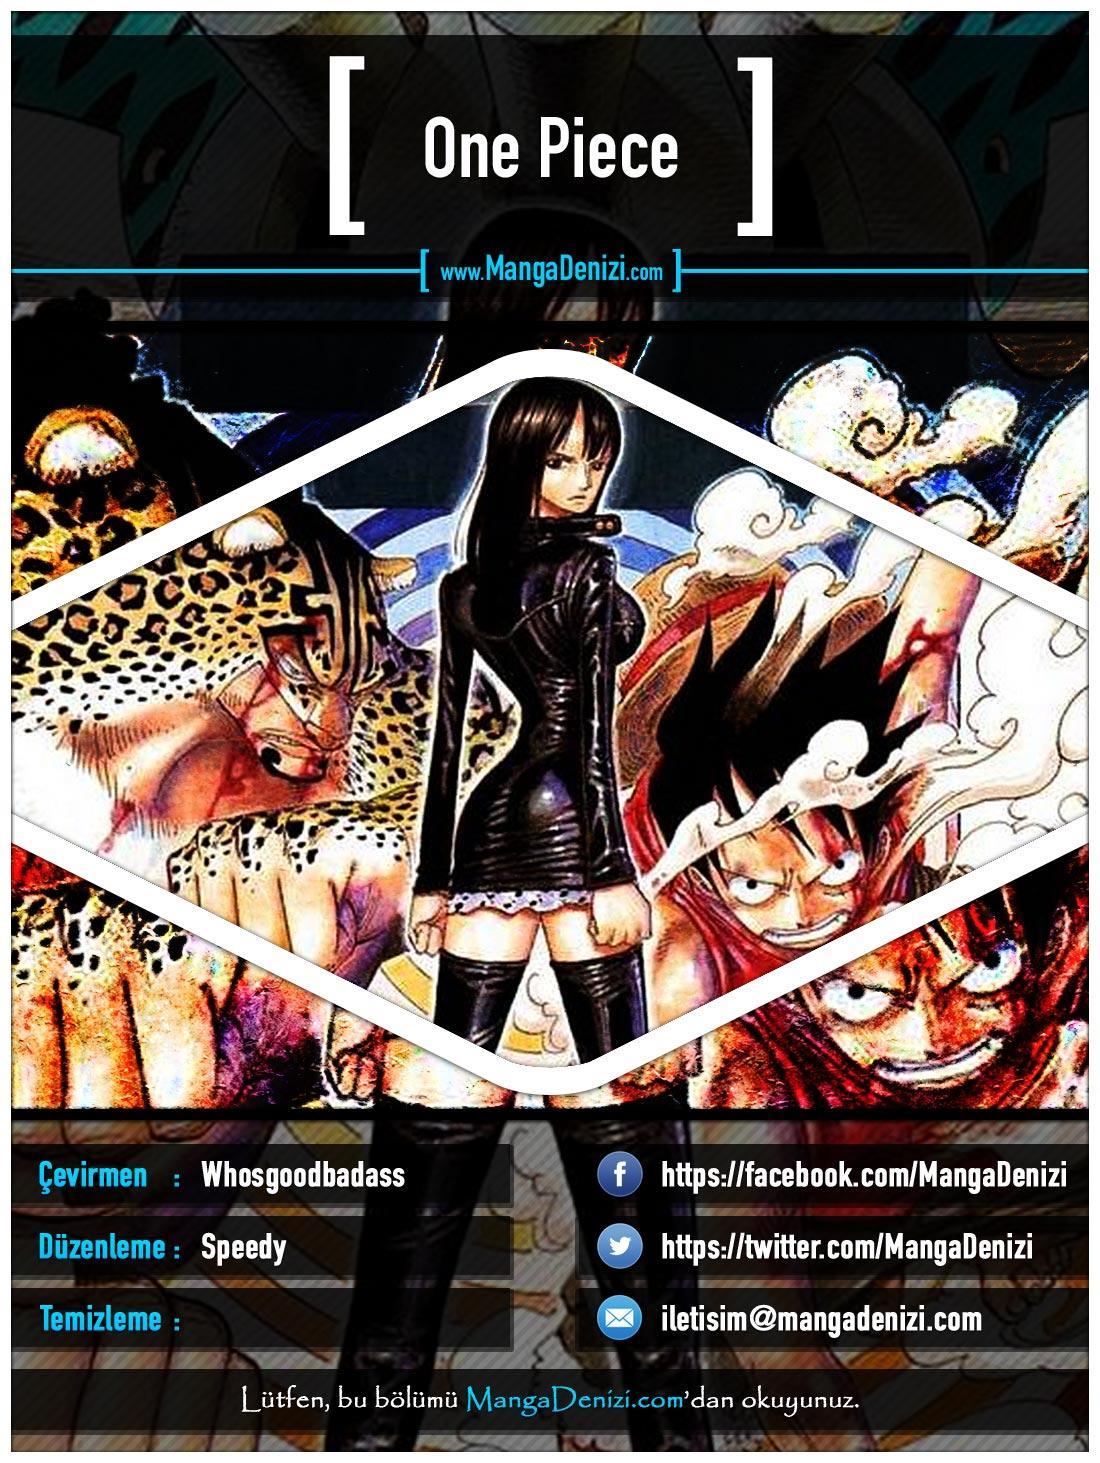 One Piece [Renkli] mangasının 0391 bölümünün 1. sayfasını okuyorsunuz.